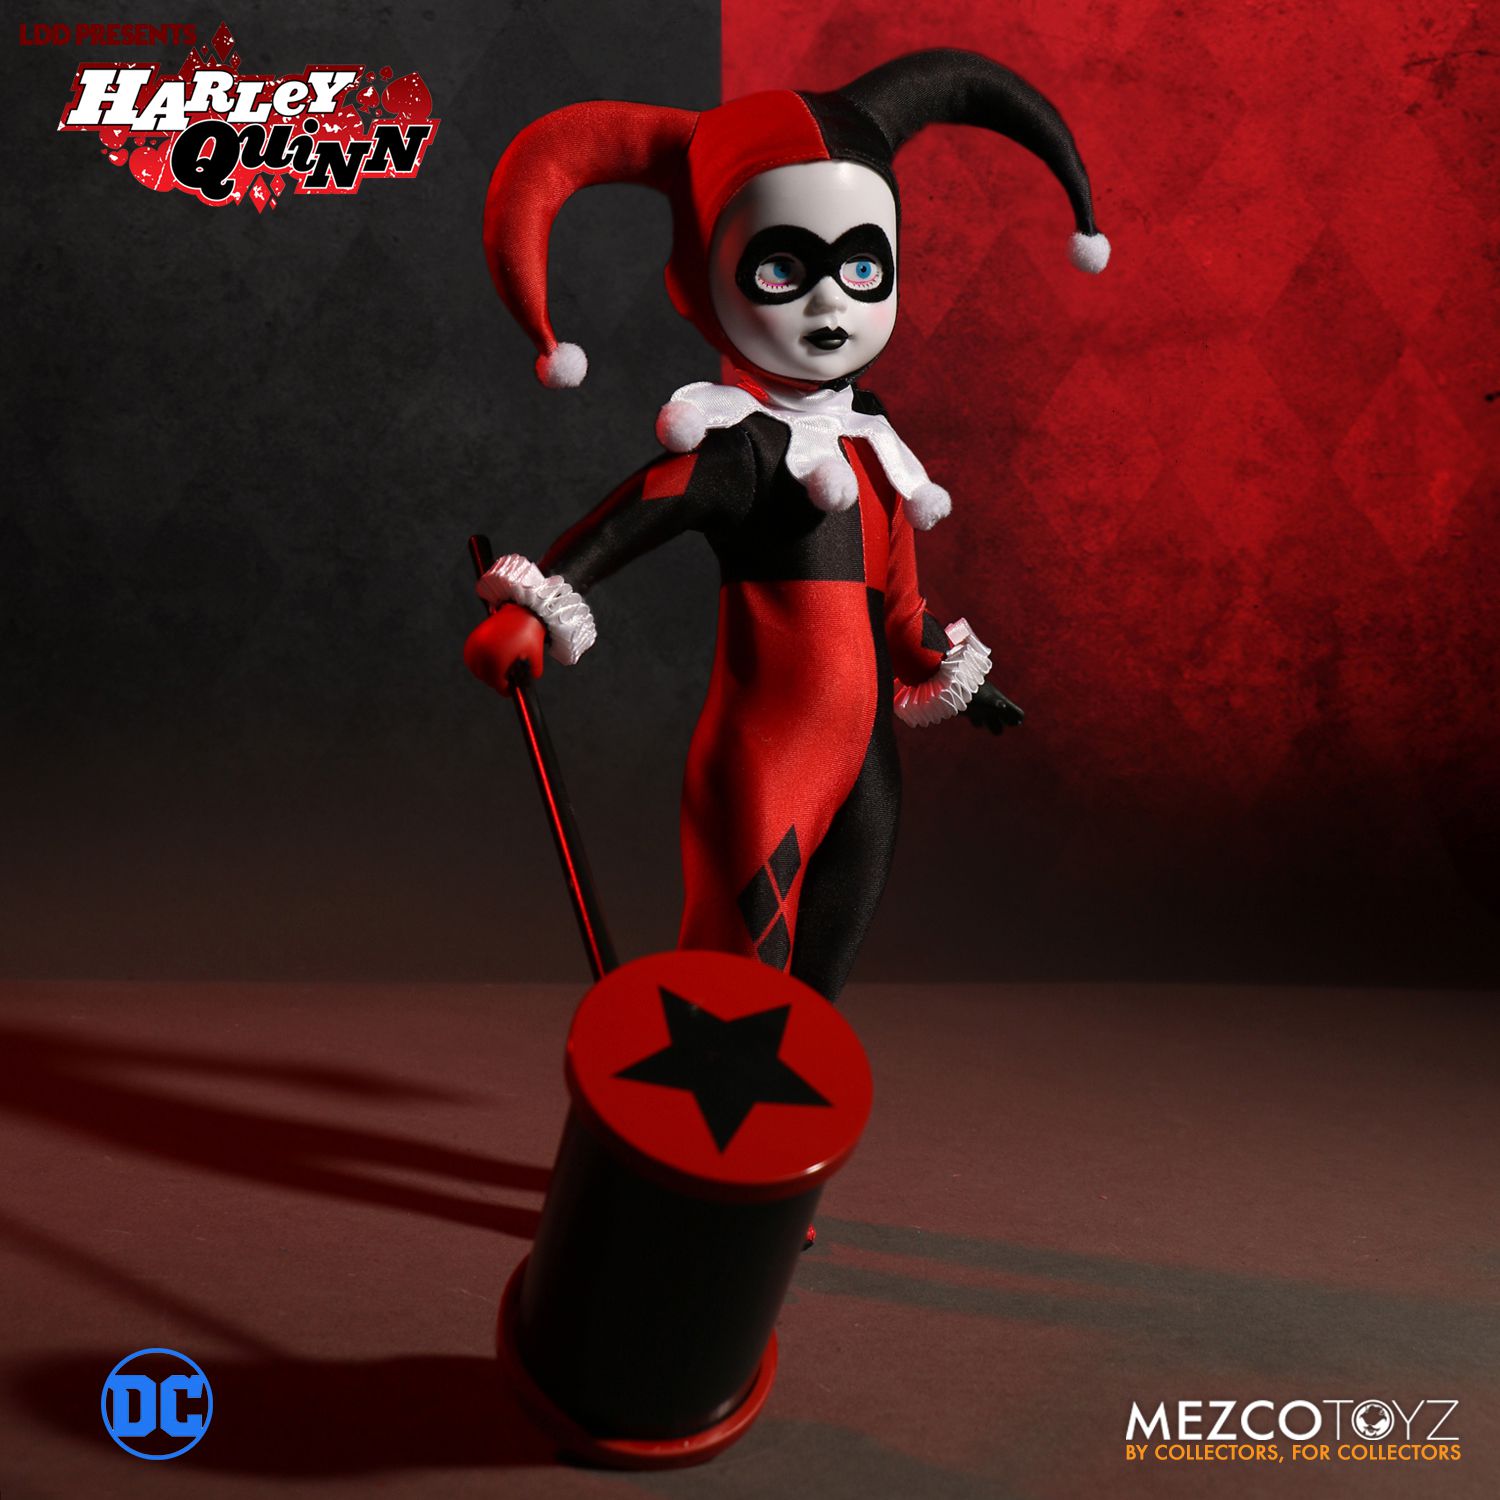 Mezco DC Comics Harley Quinn Living Dead Doll